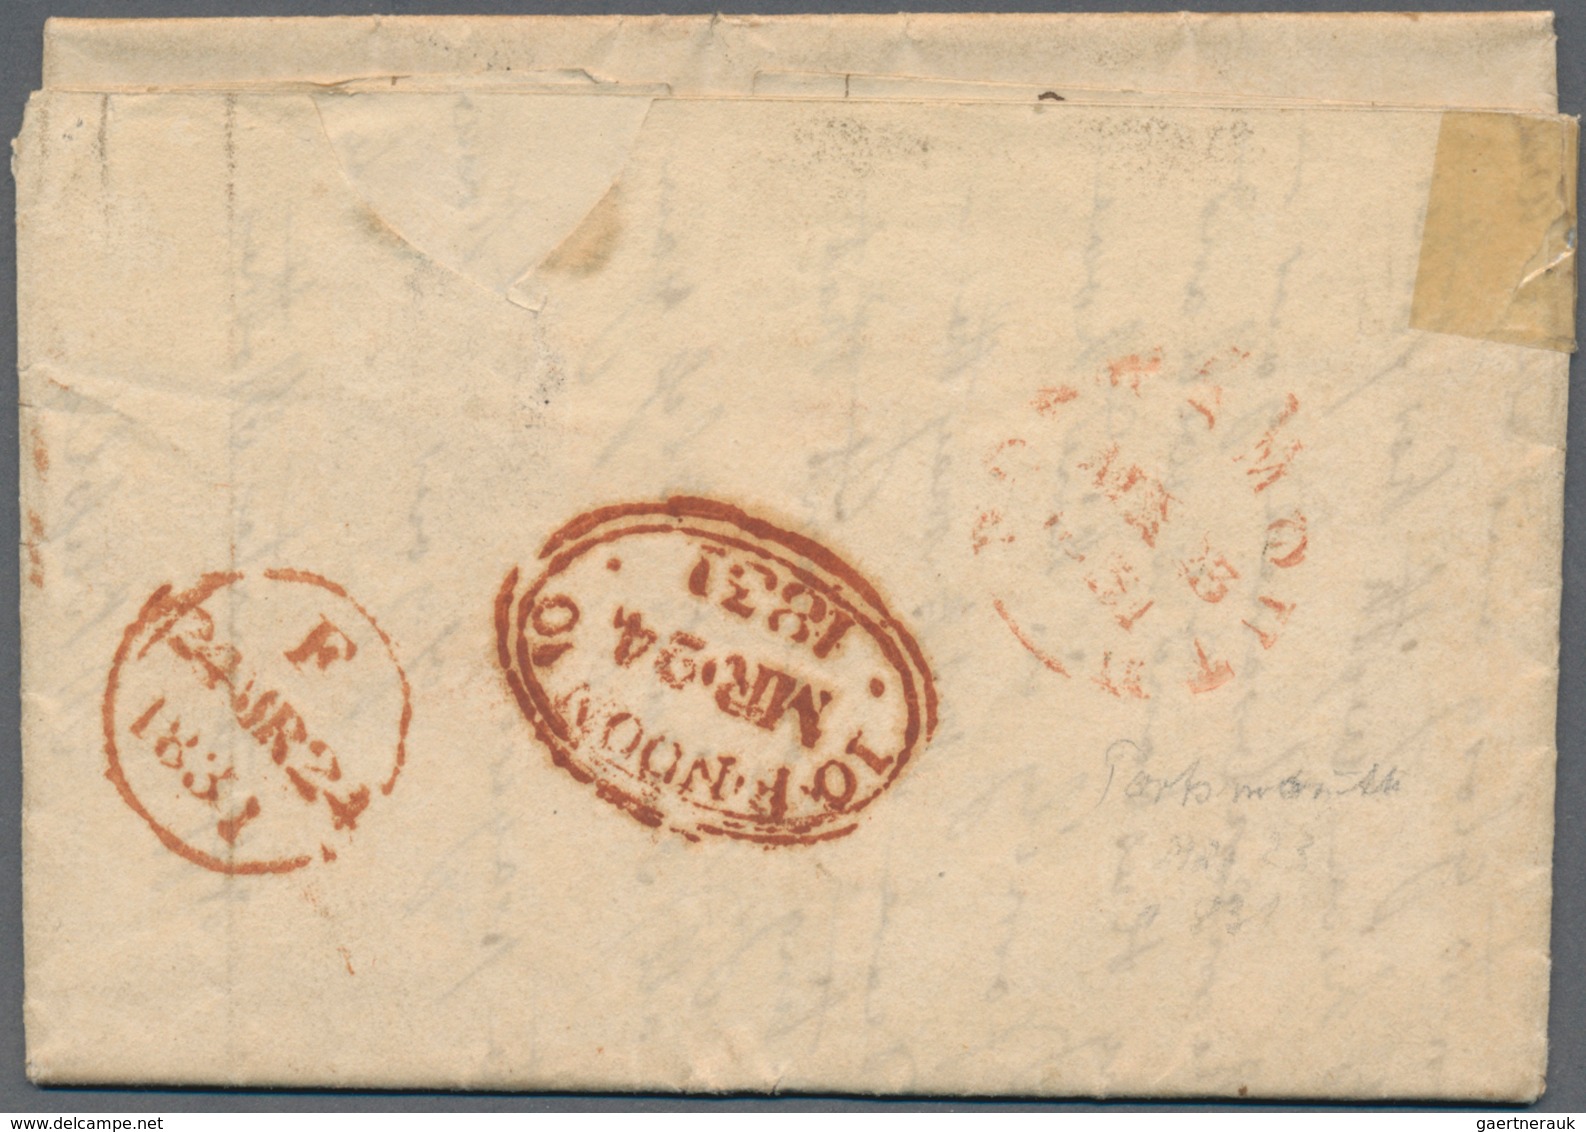 Großbritannien - Vorphilatelie: 1831, Folded Letter From "PORTSEA" (handwritten Text) With Tax Frame - ...-1840 Préphilatélie